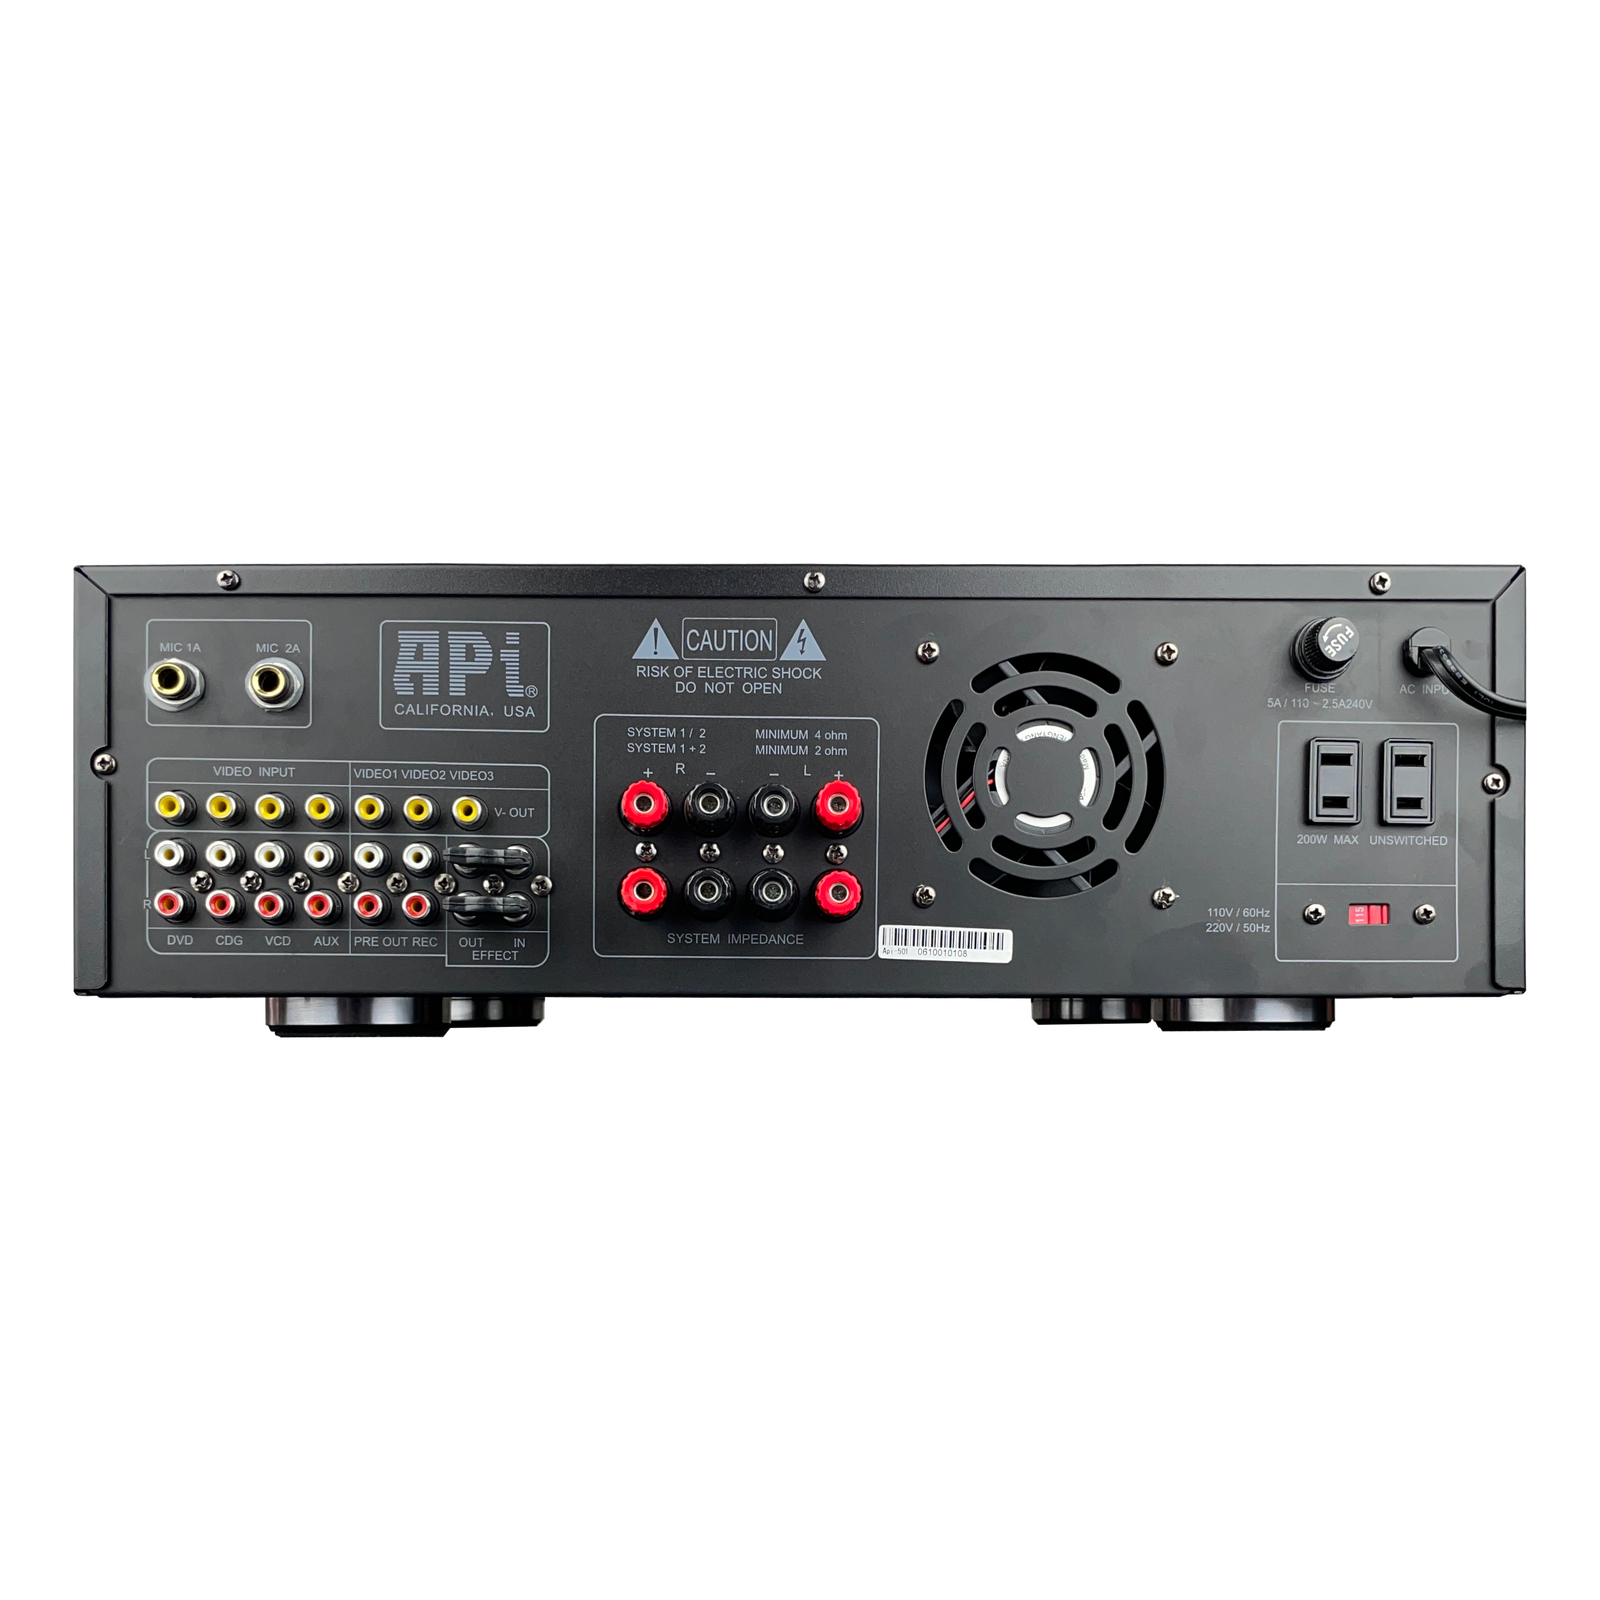 APi A-501 400W Karaoke Mixing Amplifier